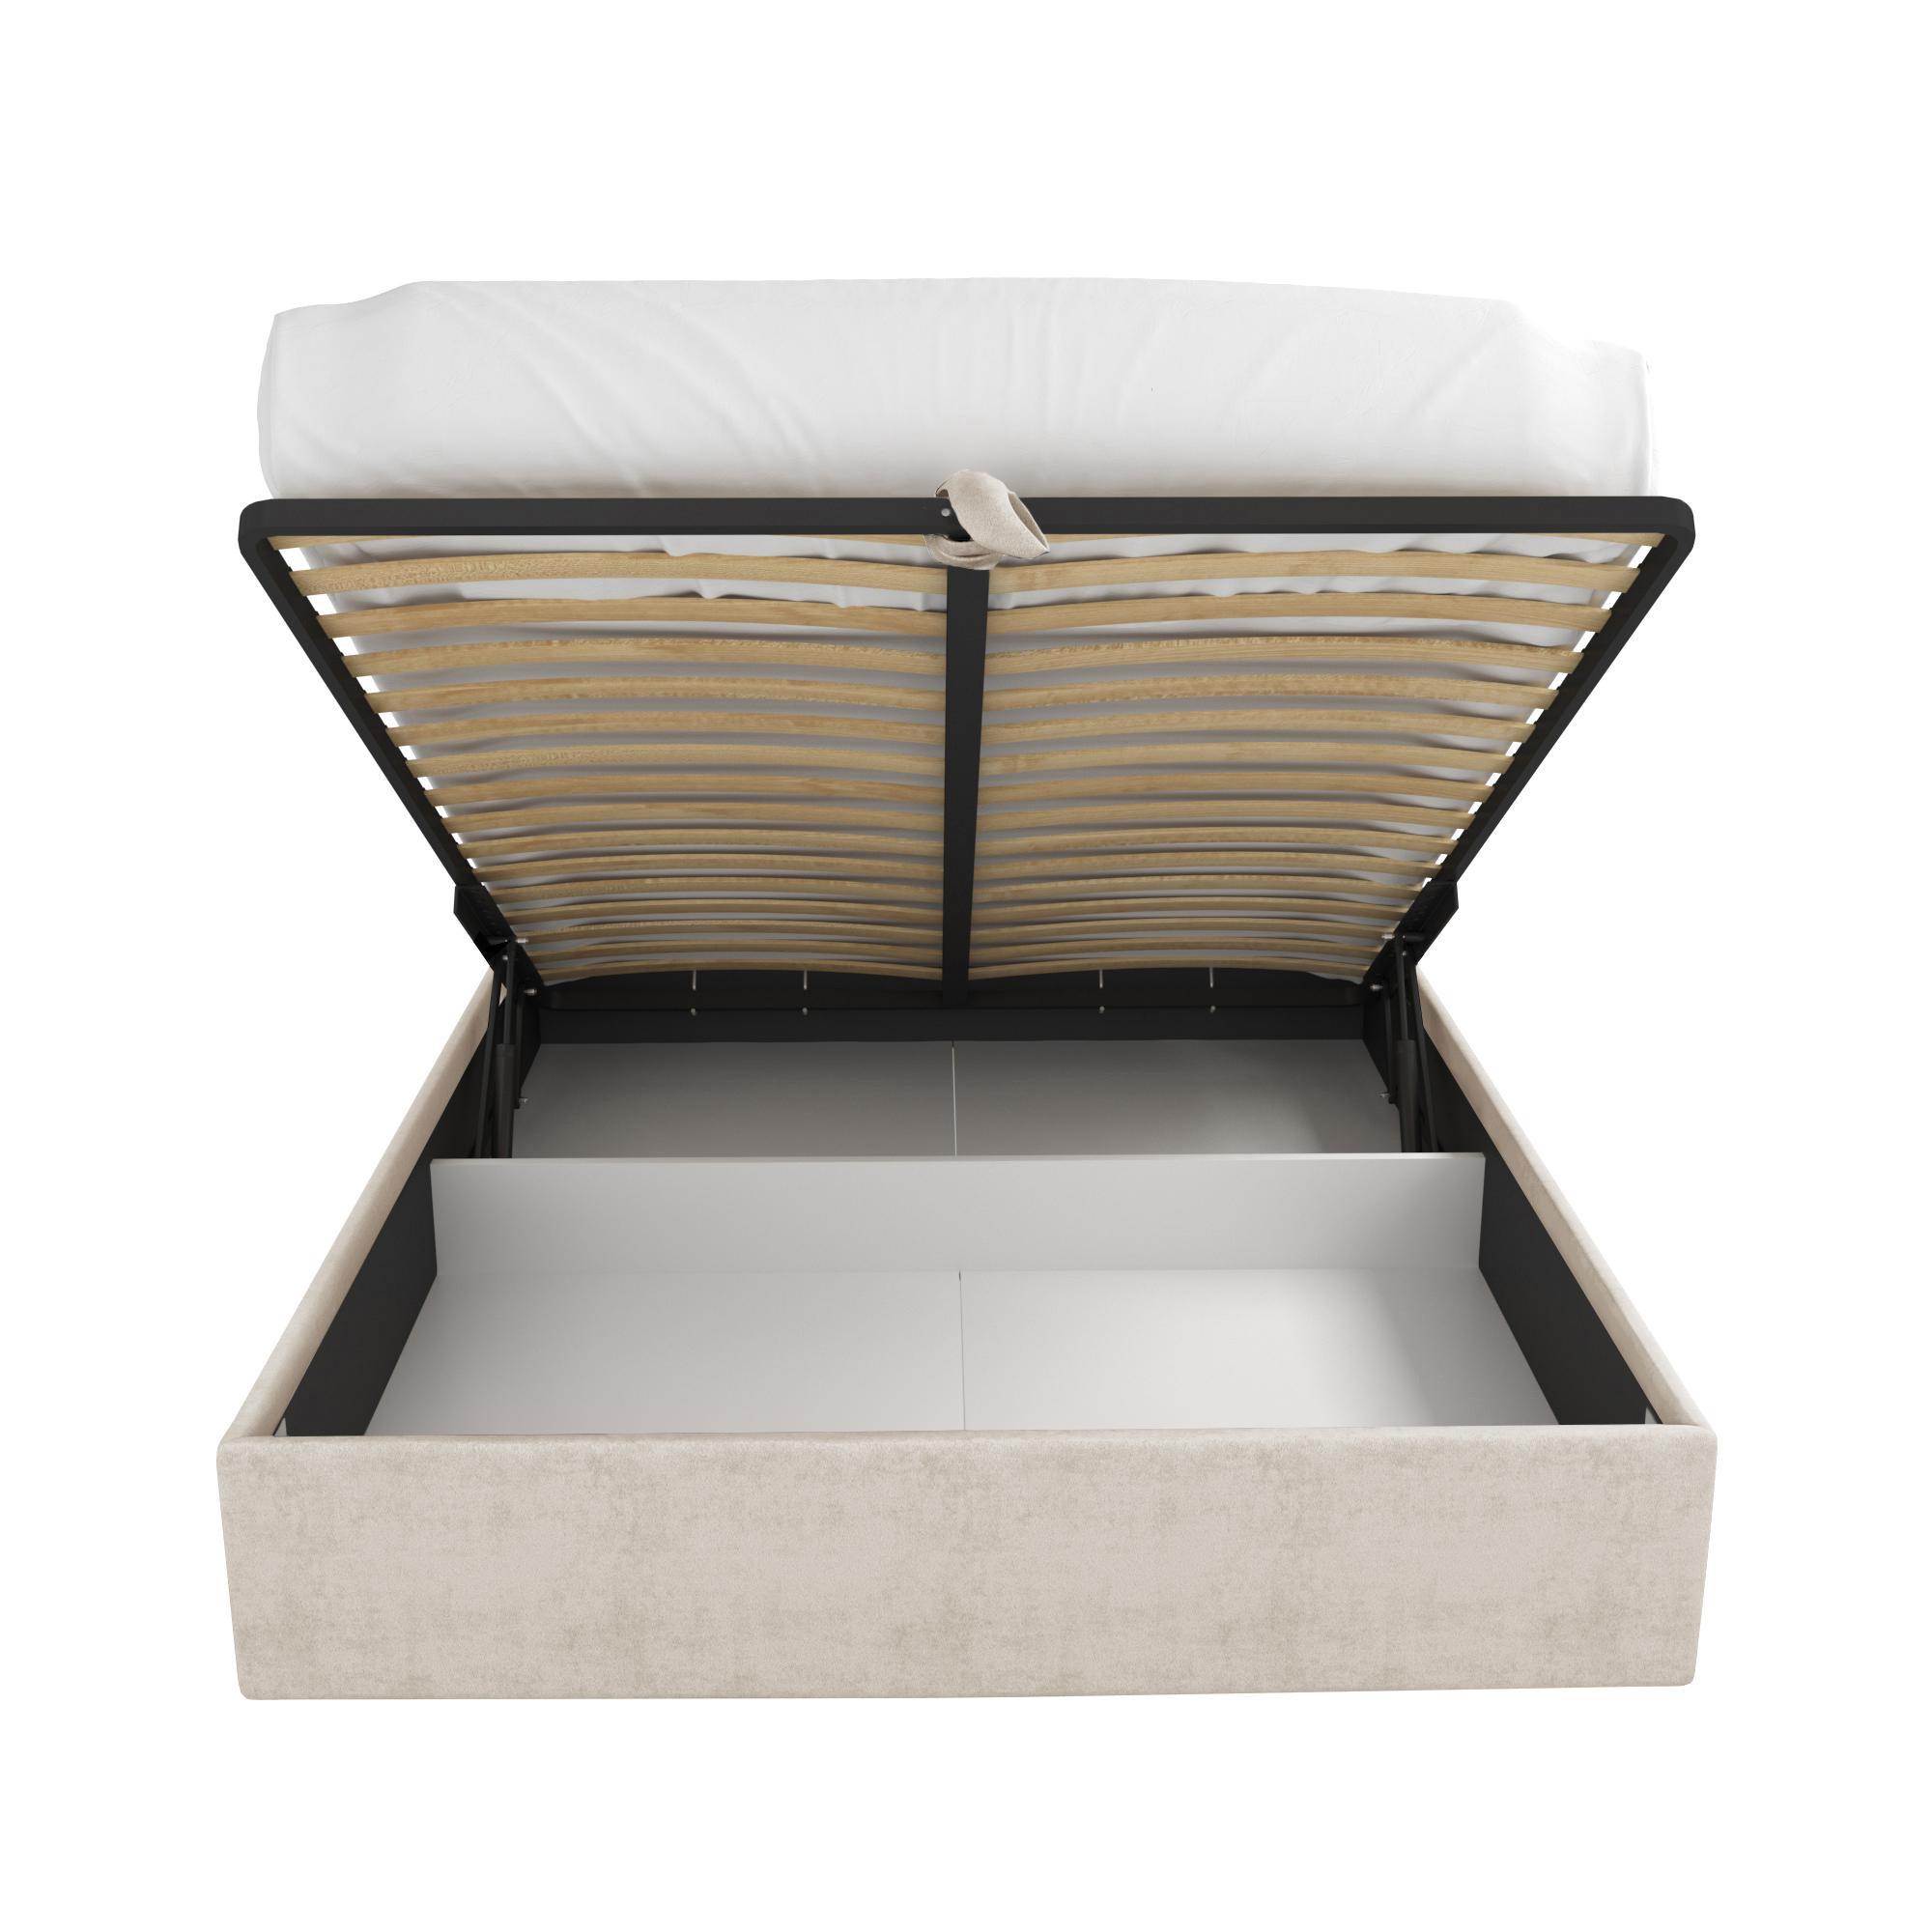 Кровать Жаклиз бежевая 180х200 изображение товара